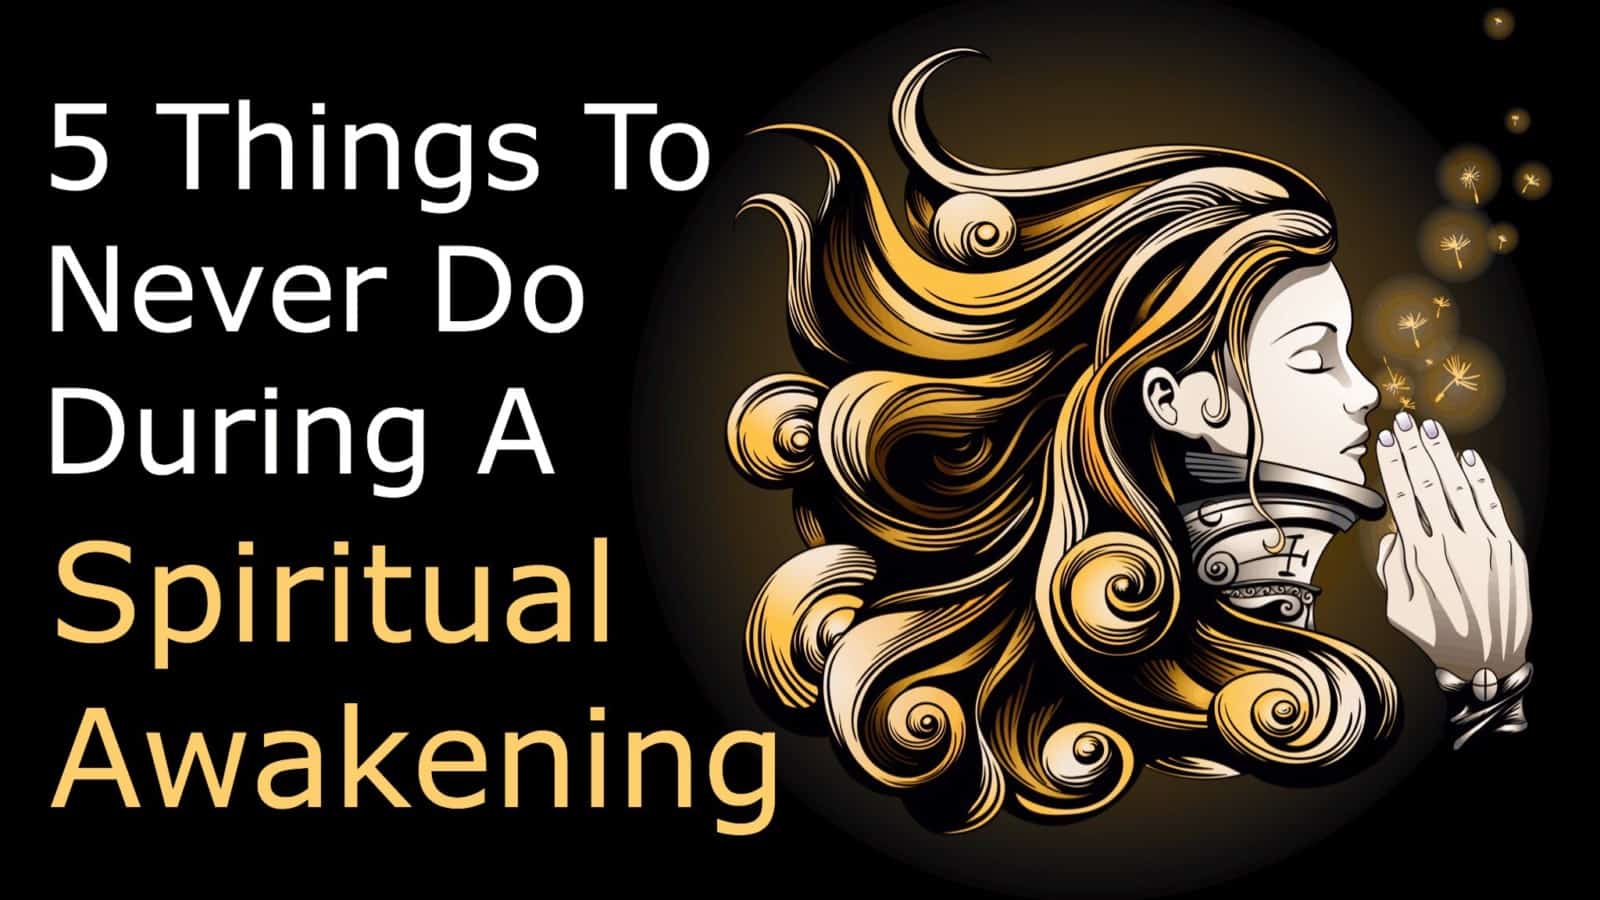 5 Things To Never Do During A Spiritual Awakening